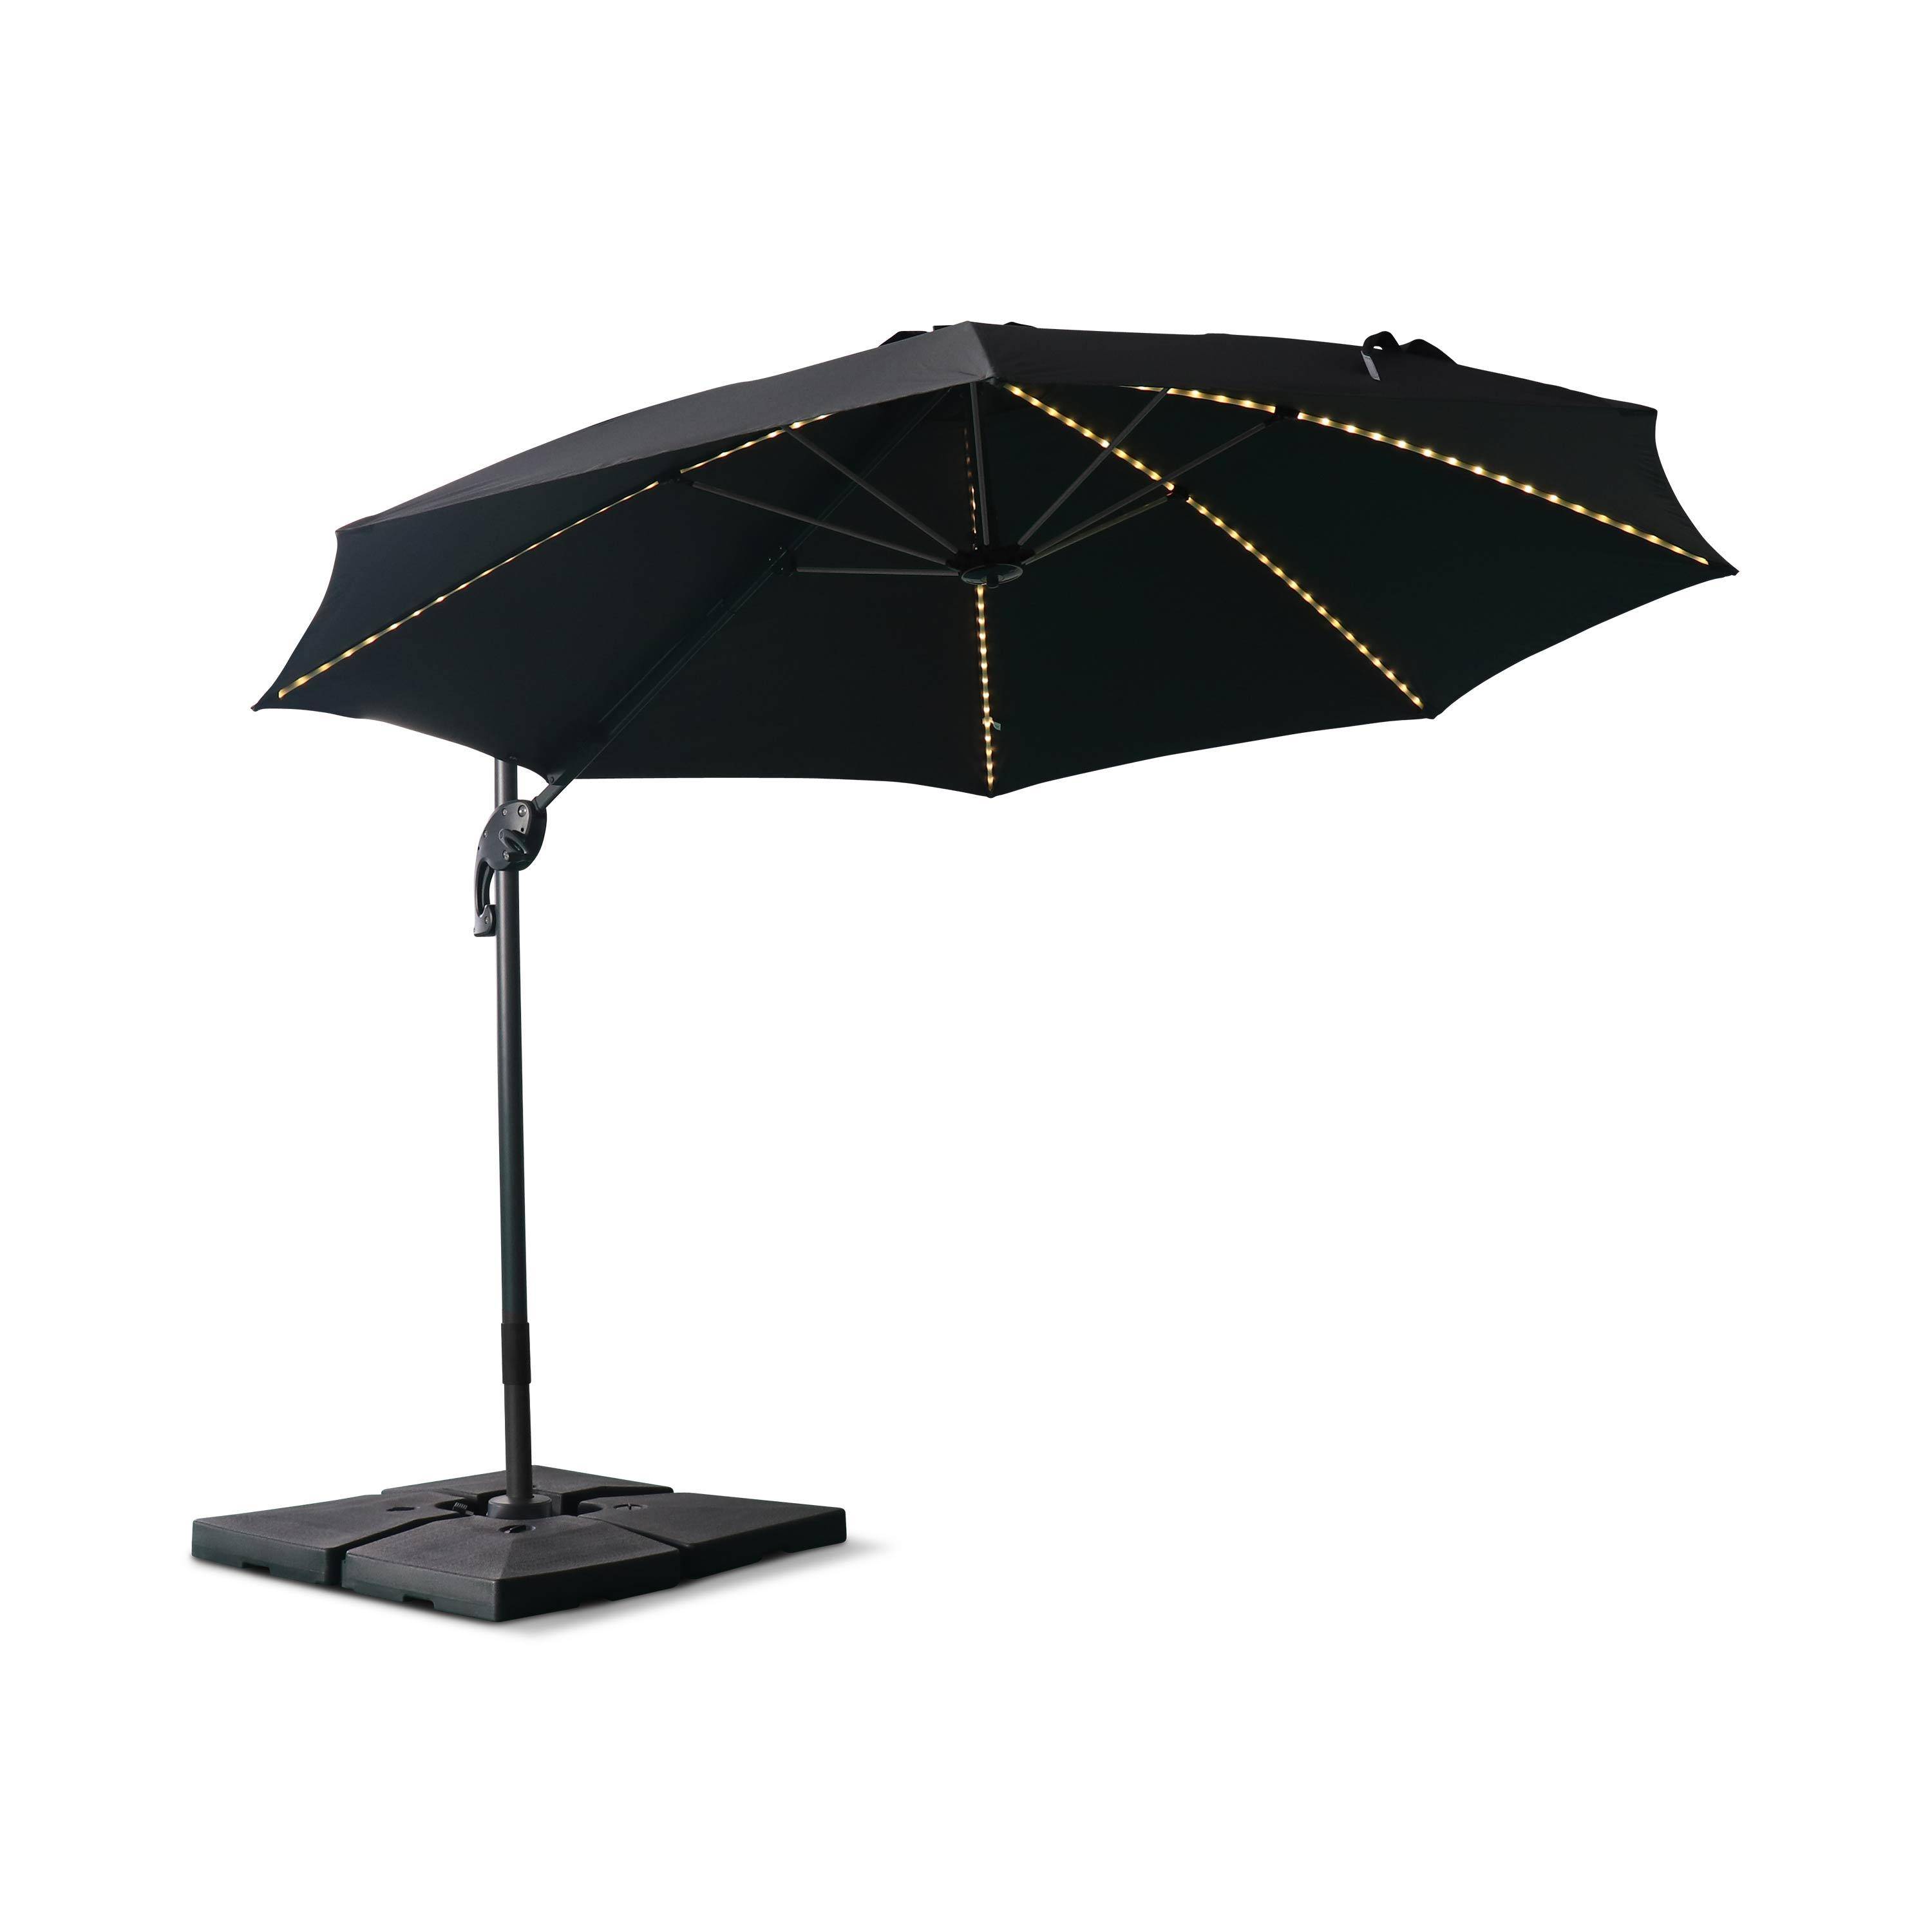 Ombrellone led tondo decentrato Ø300 cm - Dinard - Grigio - ombrellone decentrato, basculante, ribaltabile e girevole 360°, stecche in fibra di vetro Photo4